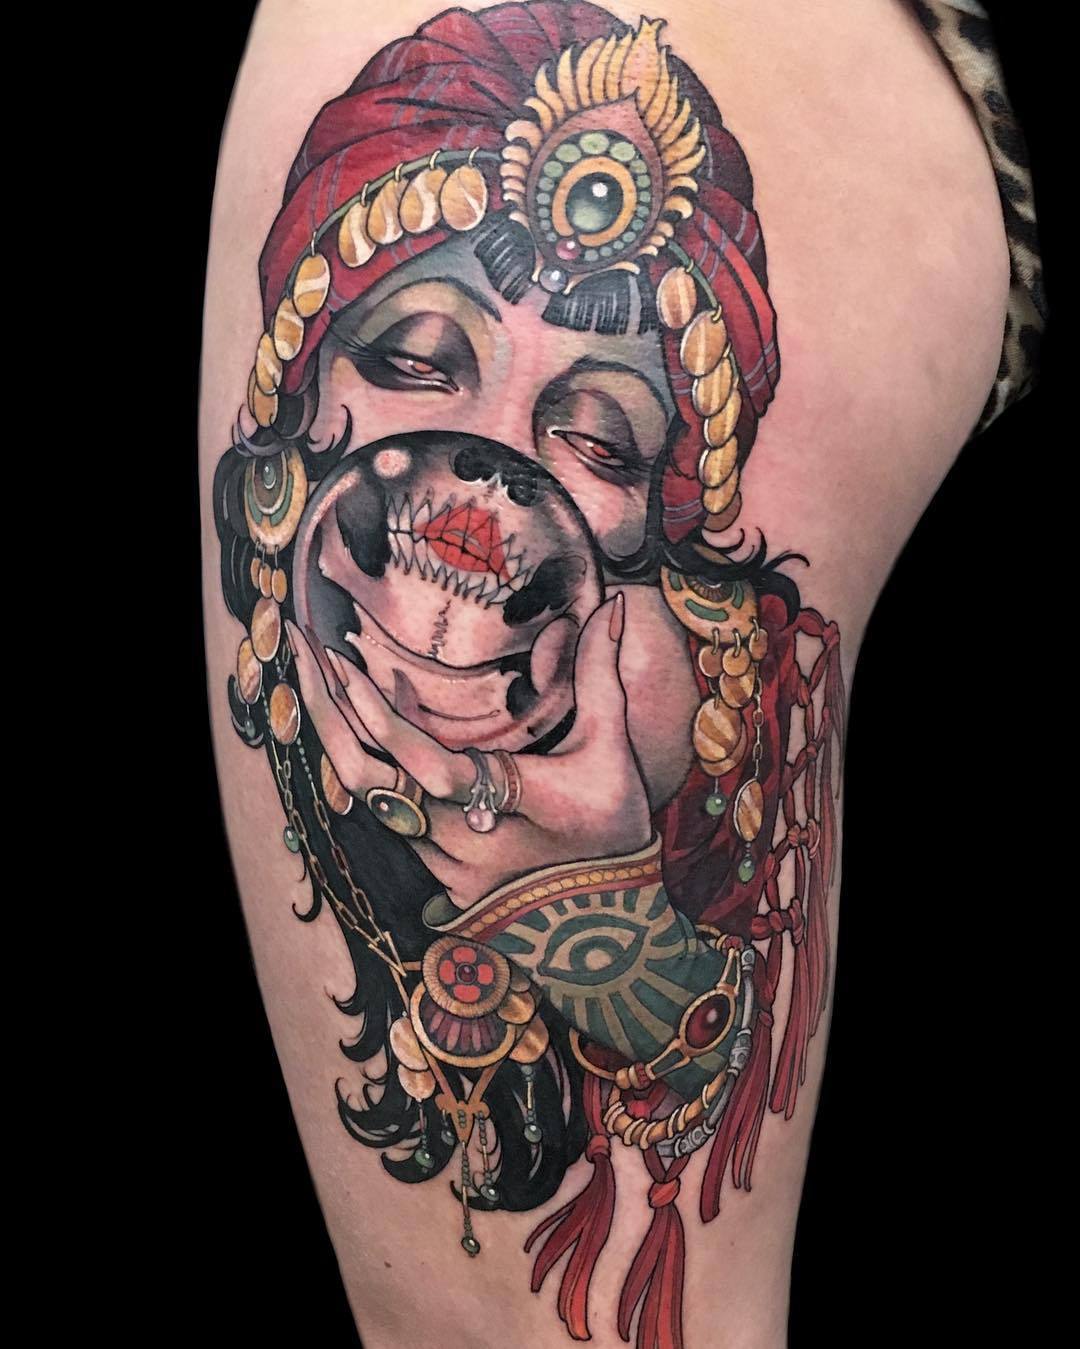 Tattoo Artist - Teresa Sharpe - Tattoo, Tattooink, , Tattoo artist, Tattoo, Tattoo Lovers League, Longpost